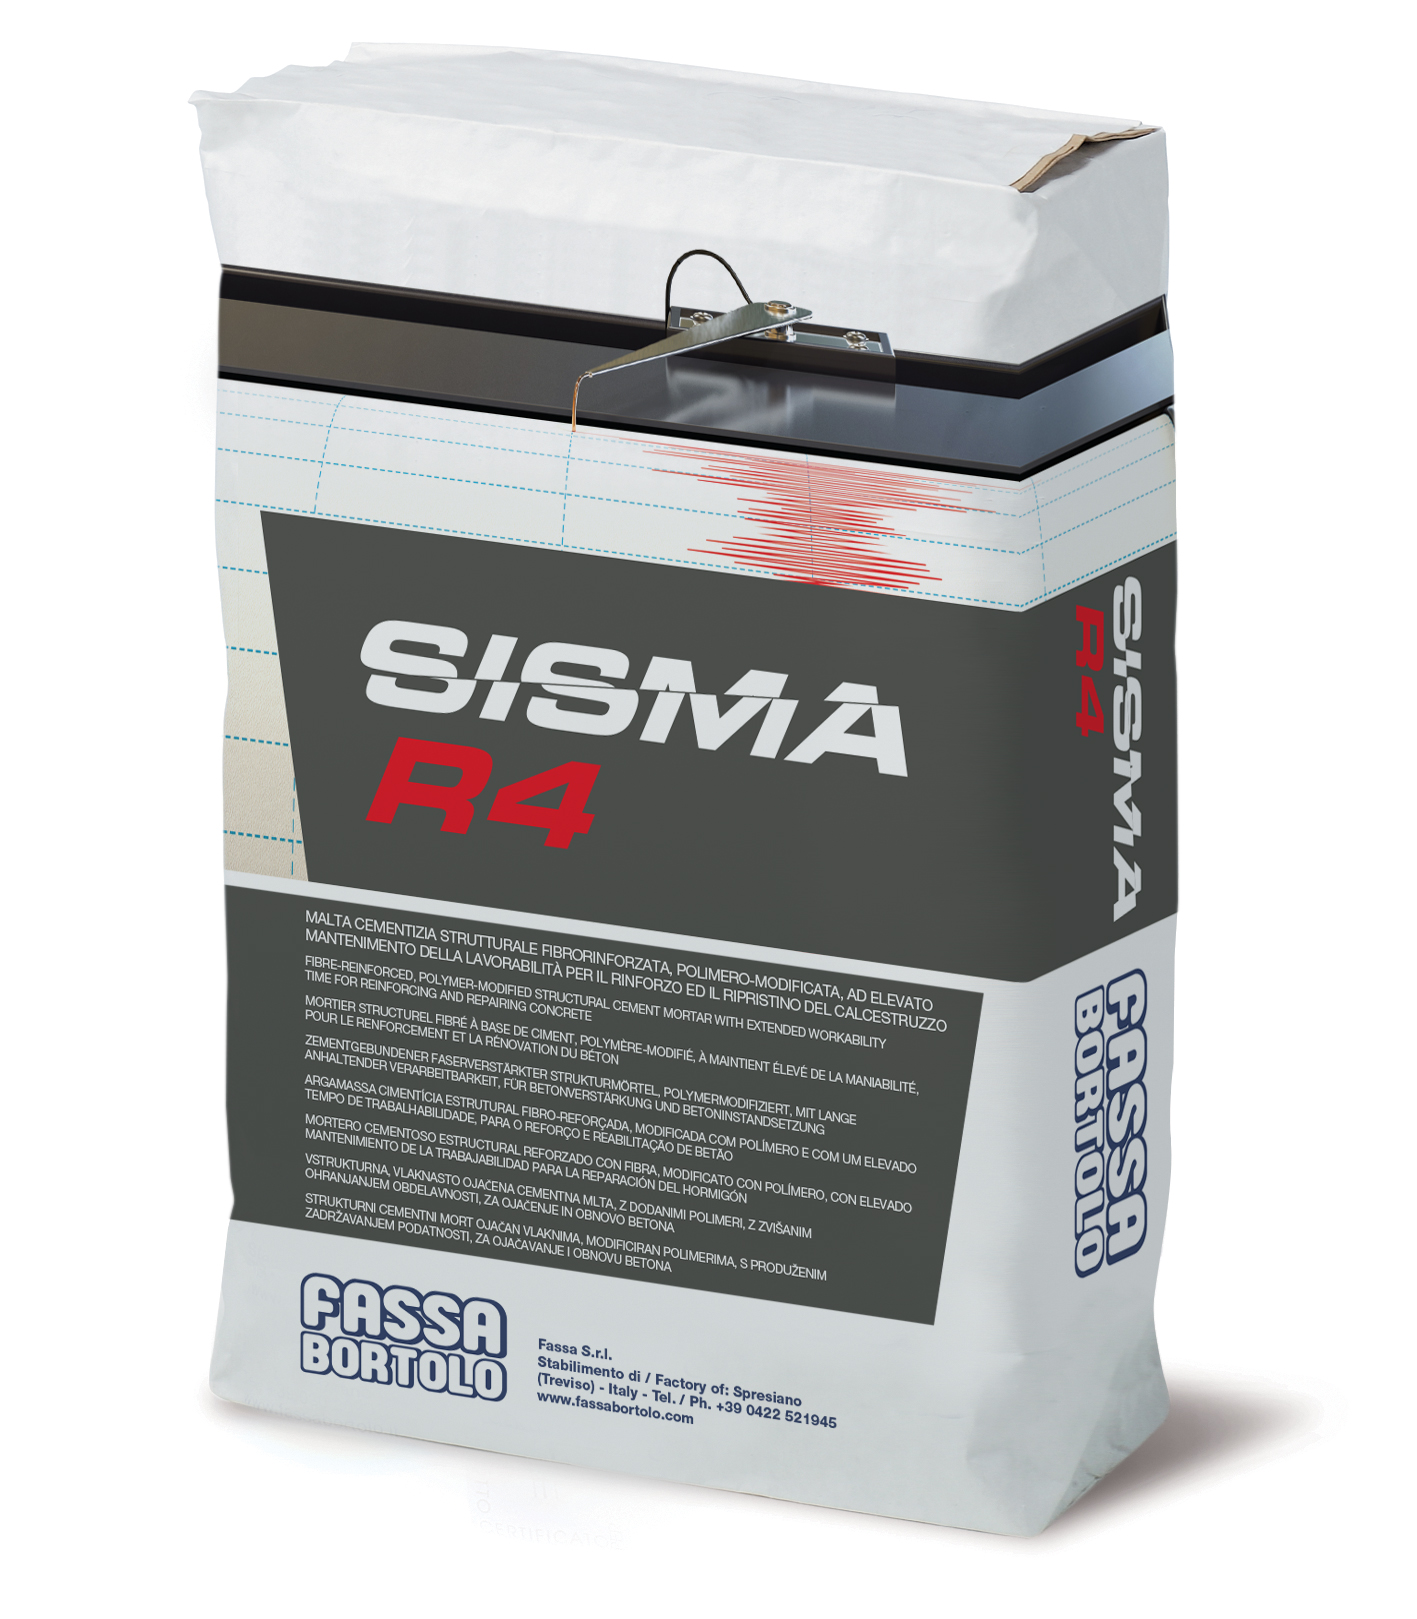 SISMA R4: Malta cementizia monocomponente tixotropica, polimero-modificata e fibrorinforzata ad elevata adesione per il rinforzo, la riparazione e la protezione di strutture in calcestruzzo e per sistemi FRCM